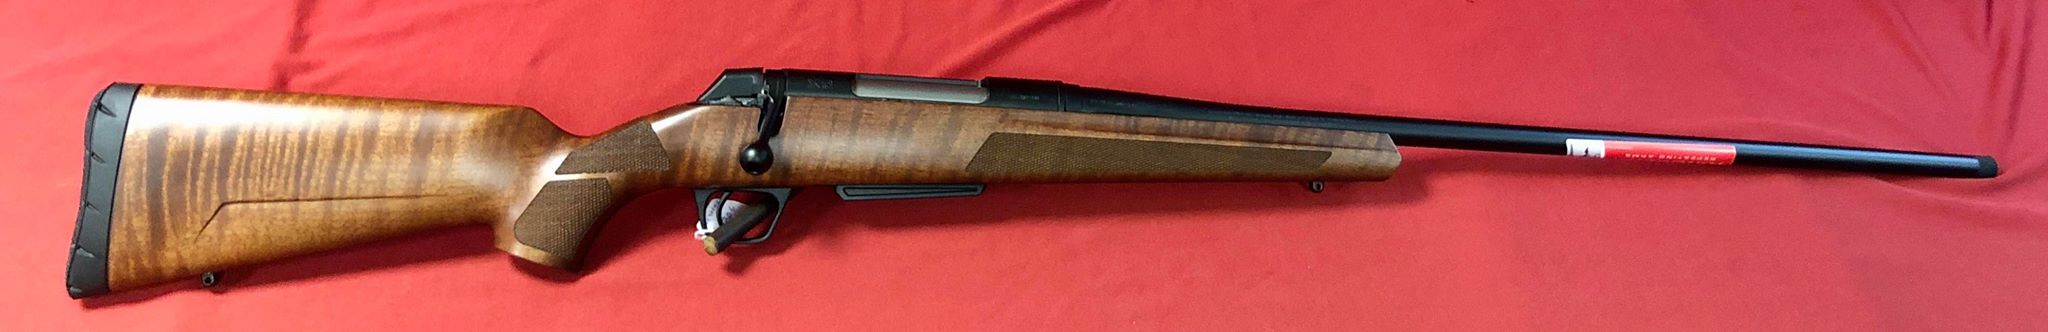 Carabine Winchester XPR en calibre 300win